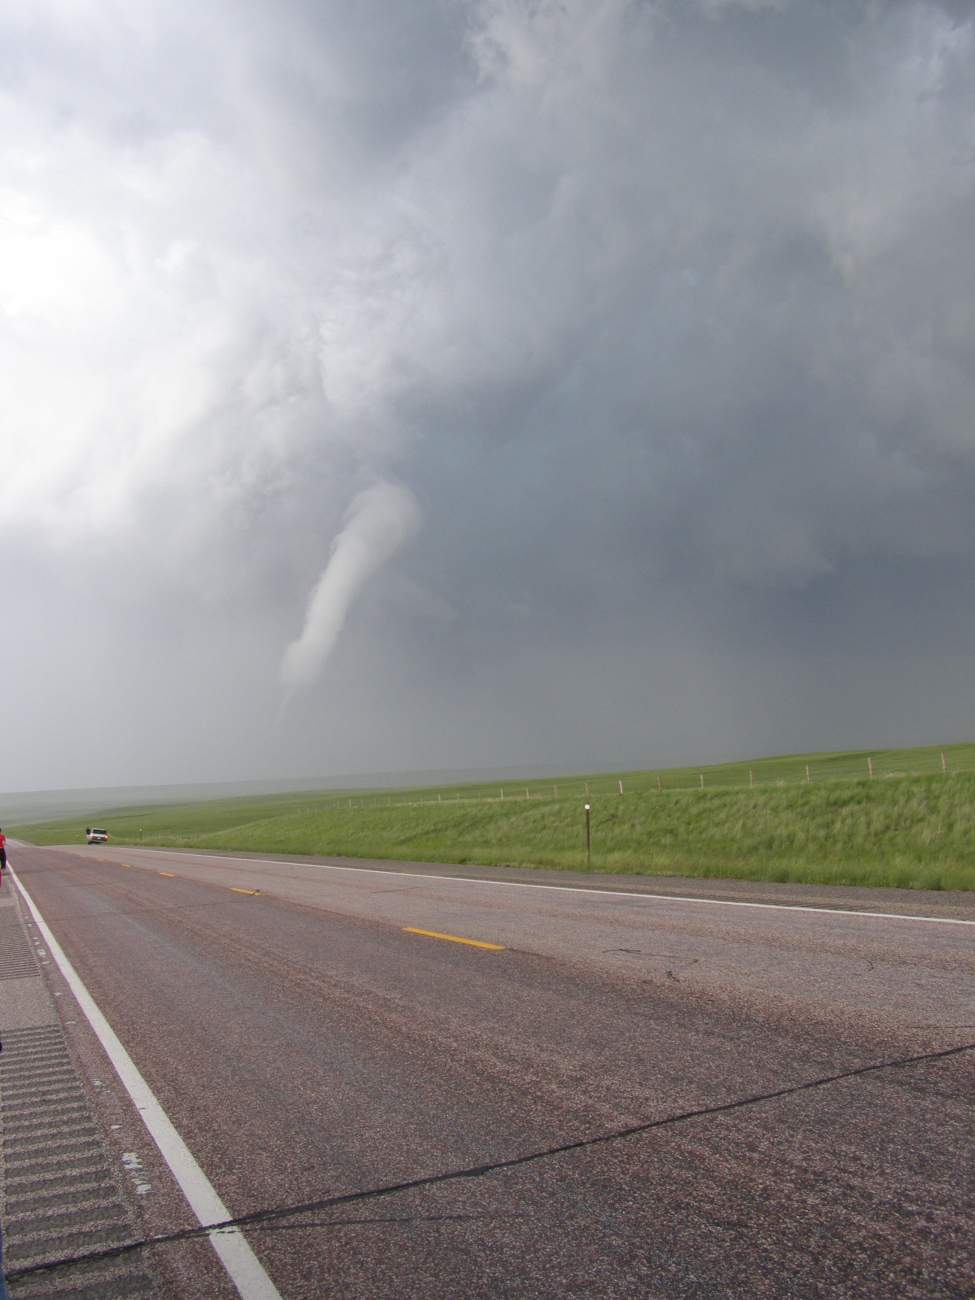 VORTEX2 intercepts a tornado in SE Wyoming on June 5, 2009